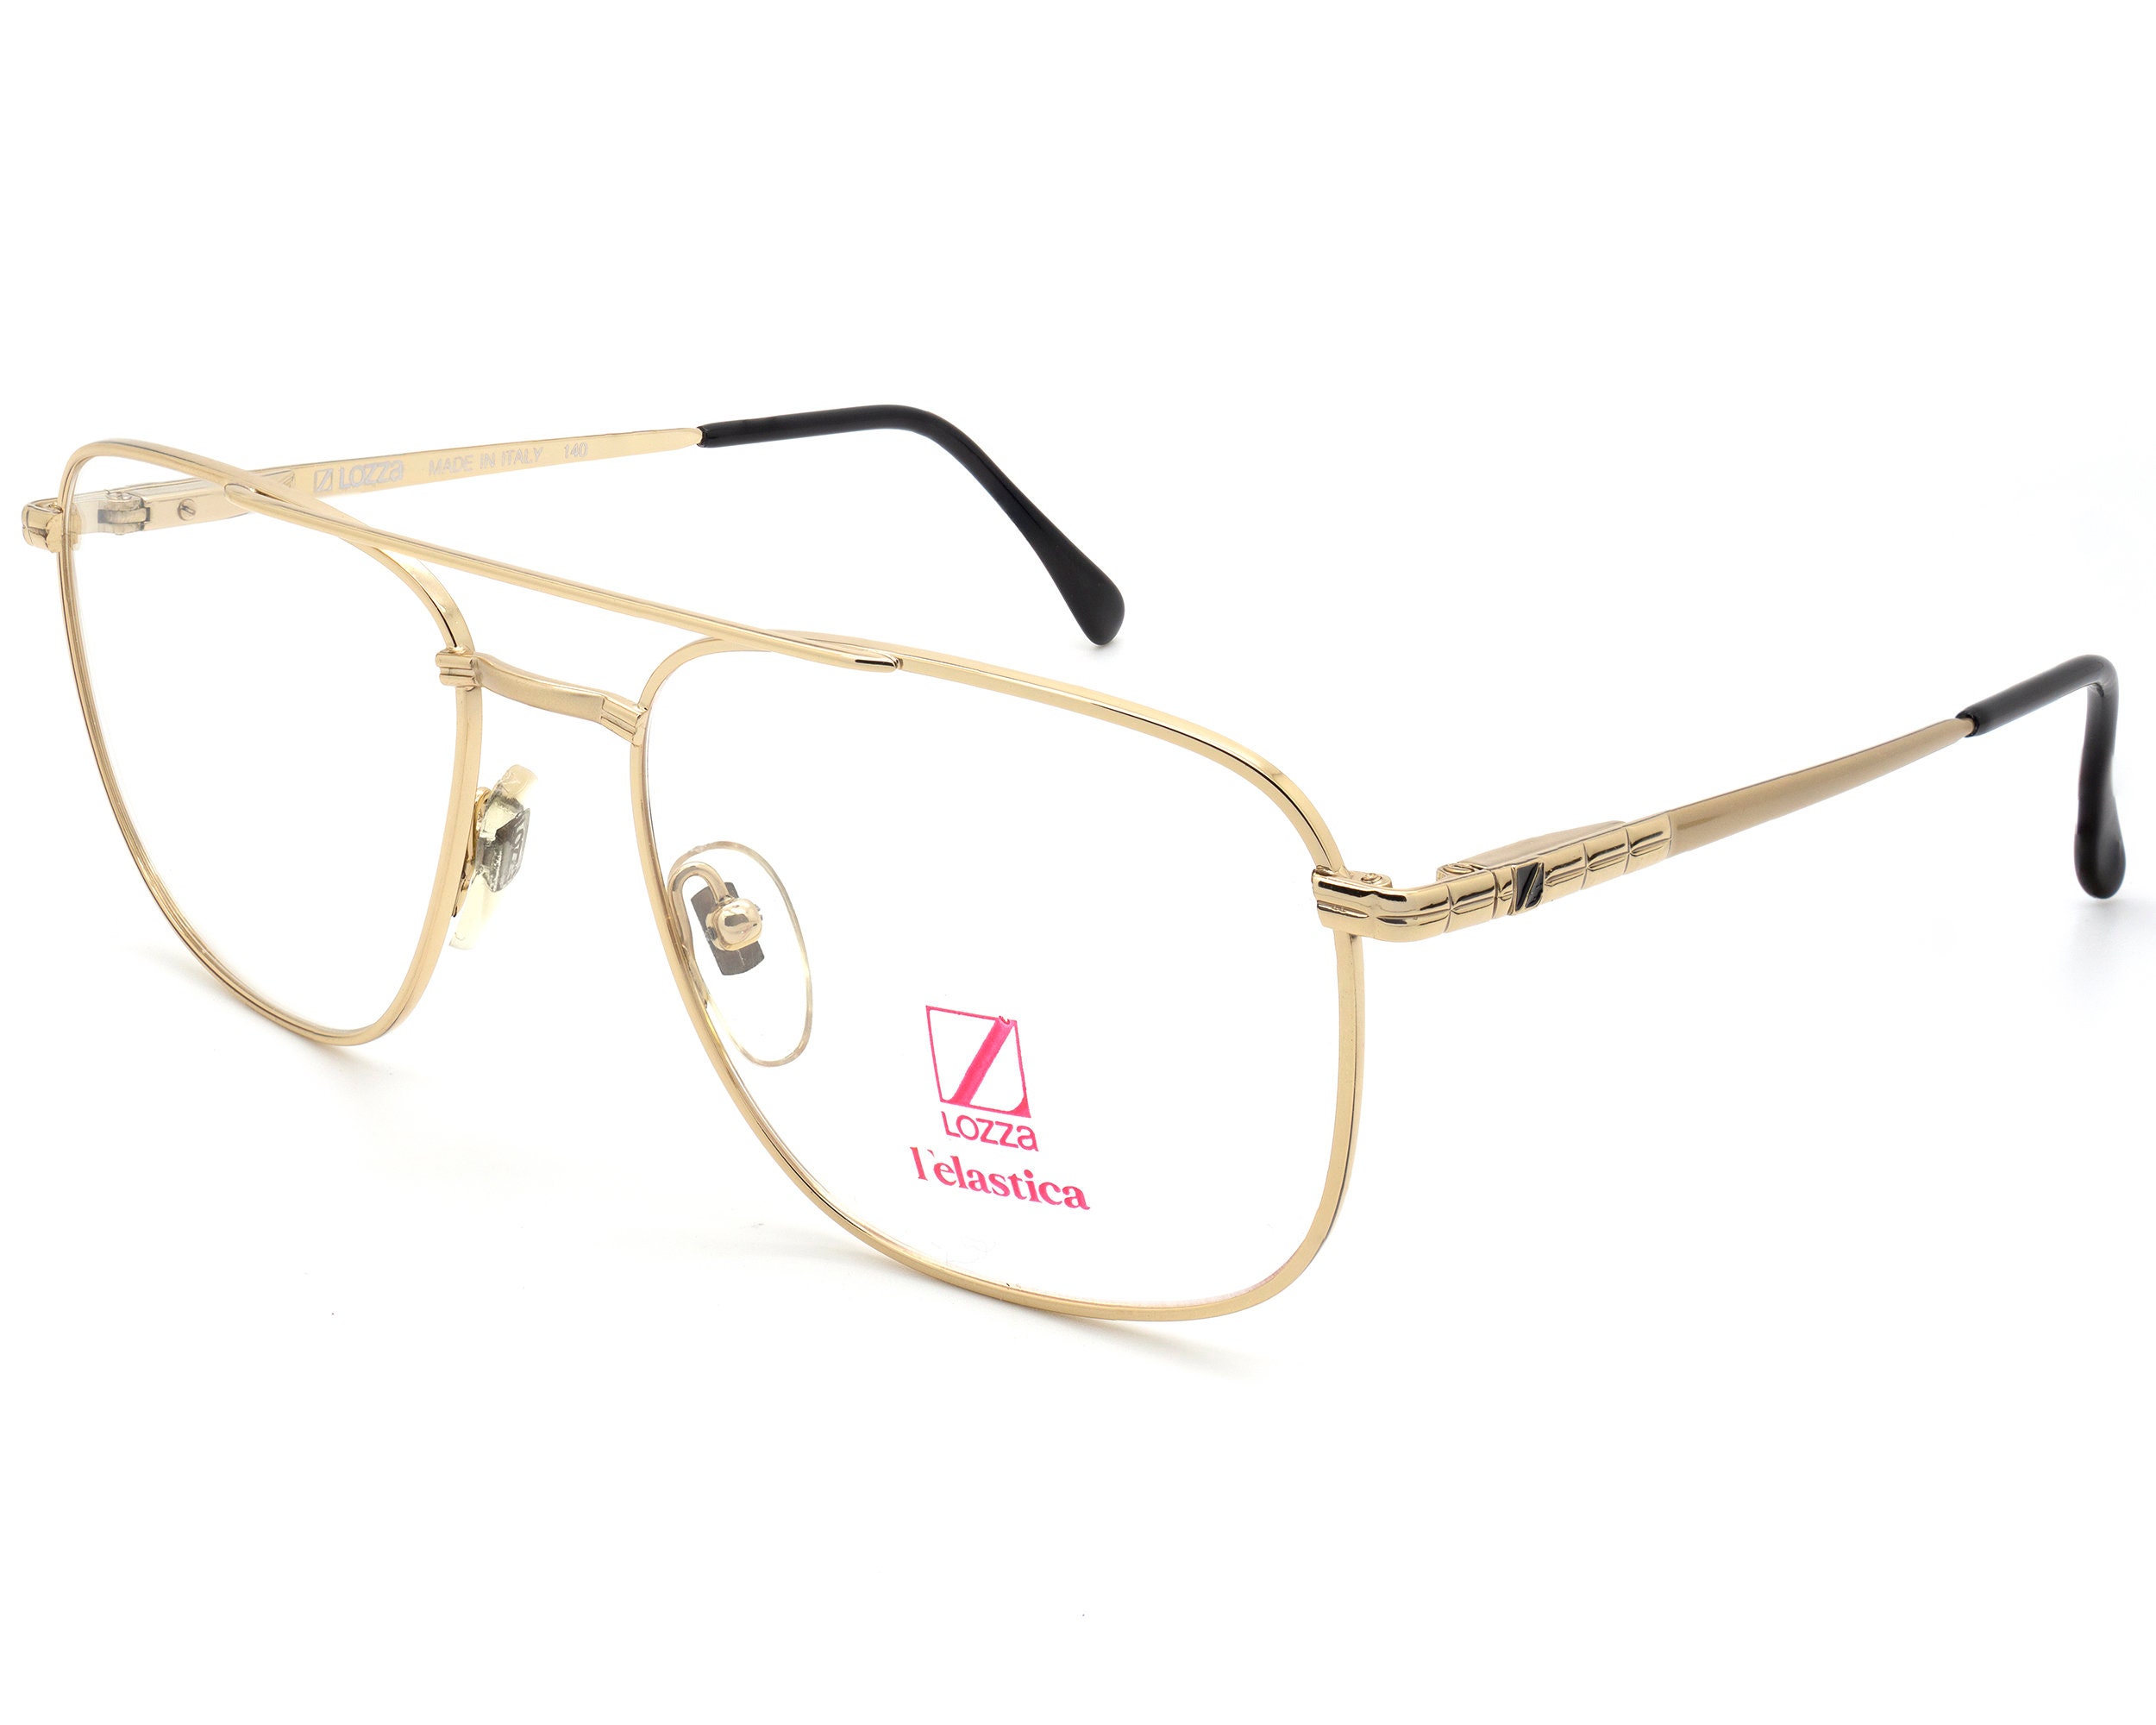 Lozza 80s Aviator Glasses for Men Made in Italy - Etsy